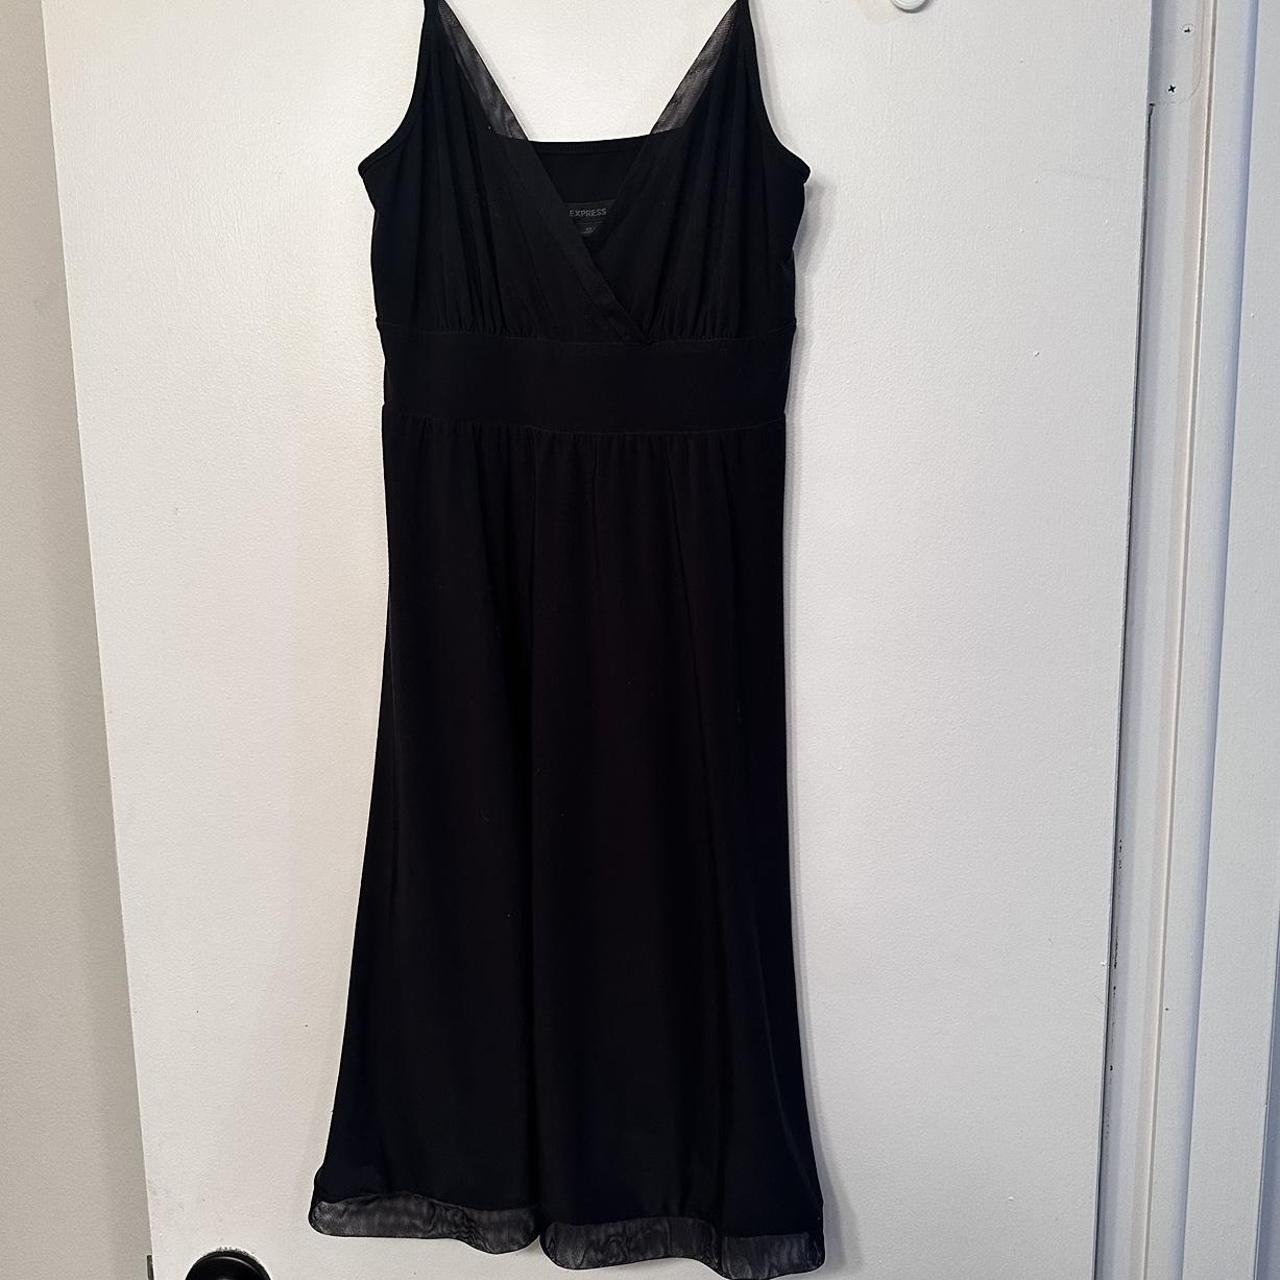 Express Womens Little Black Dress Gorgeous super... - Depop